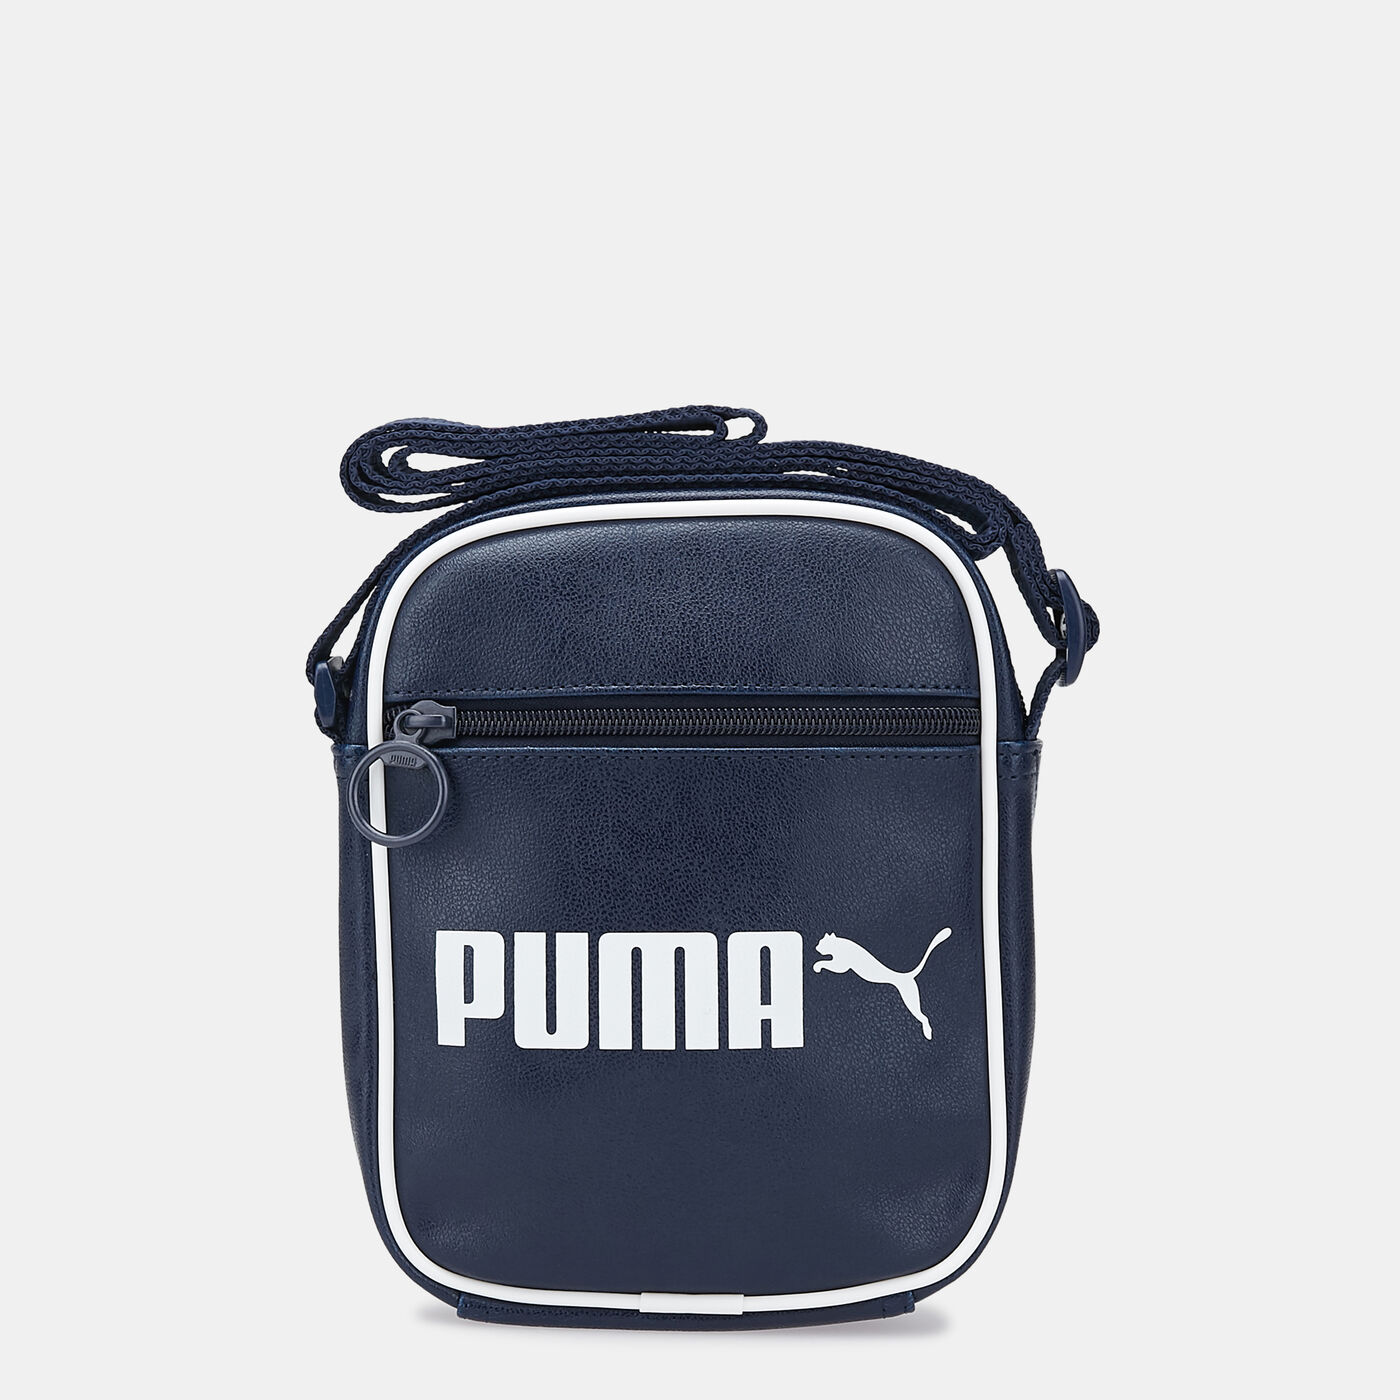 Men's Campus Portable Retro Crossbody Bag